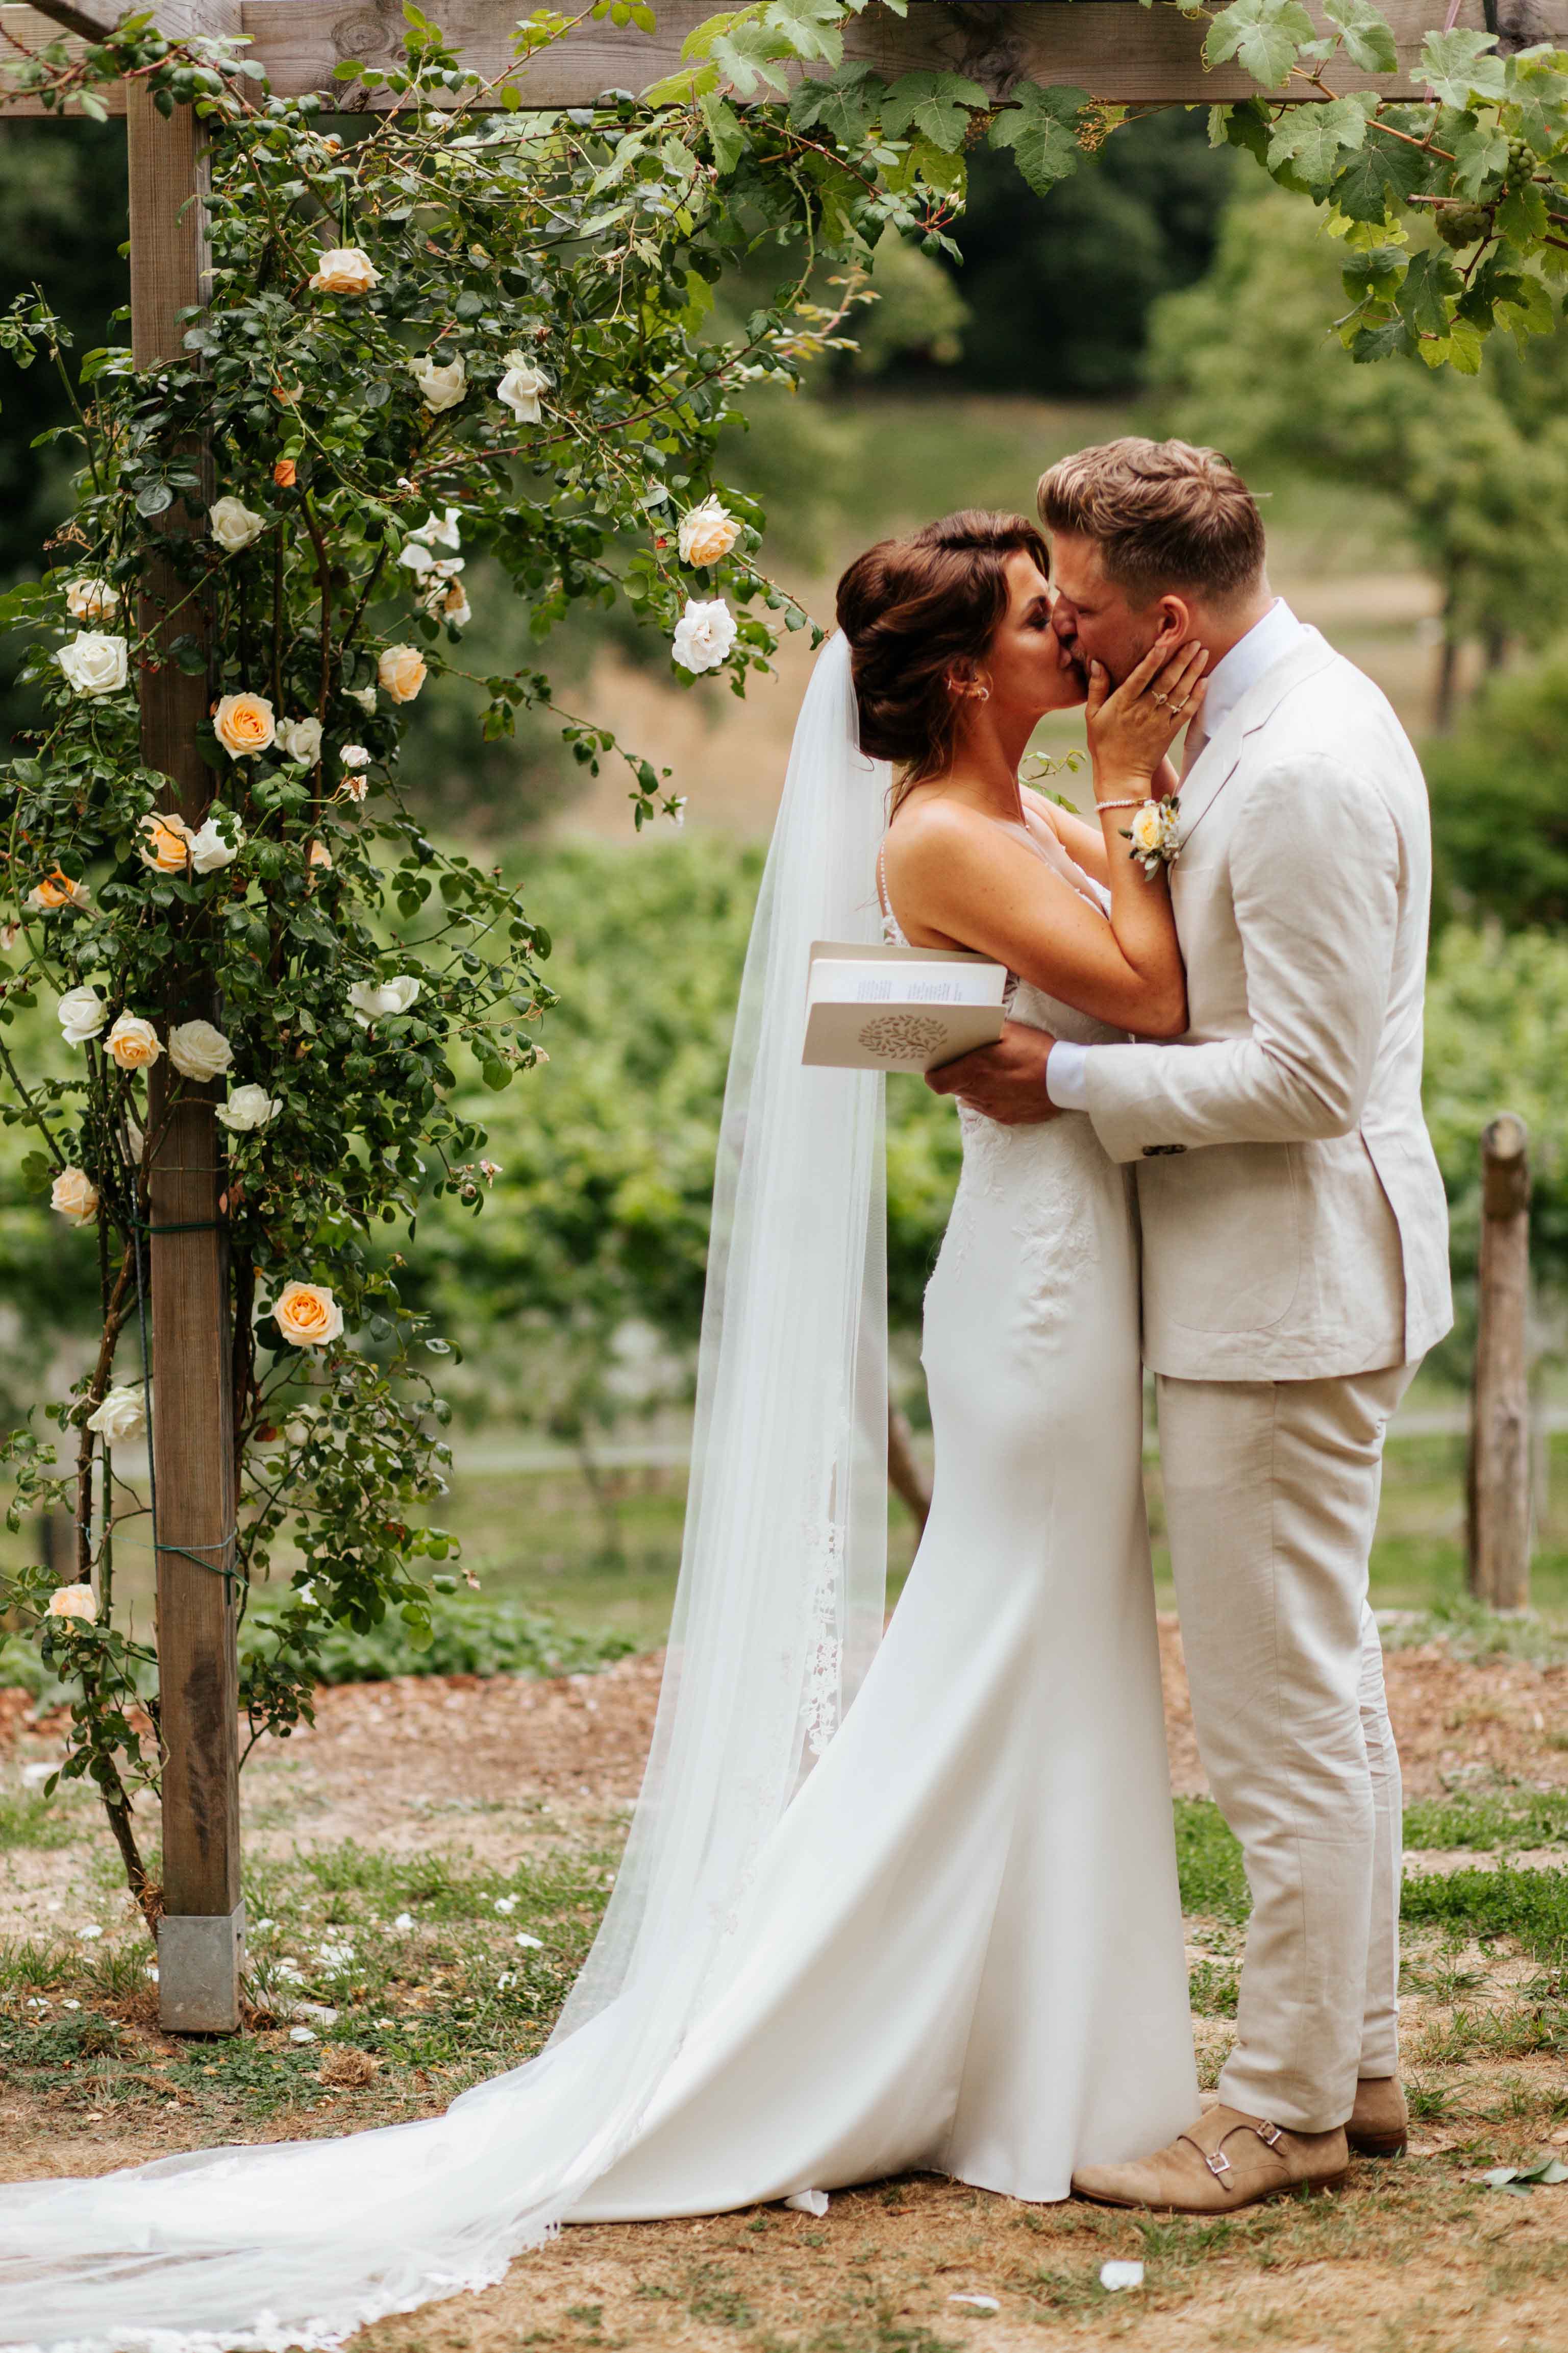 Een echtpaar kust elkaar bij de ceremonie van hun huwelijk. Beide dragen lichte kleding en in de achtergrond is een wijngaard zichtbaar.